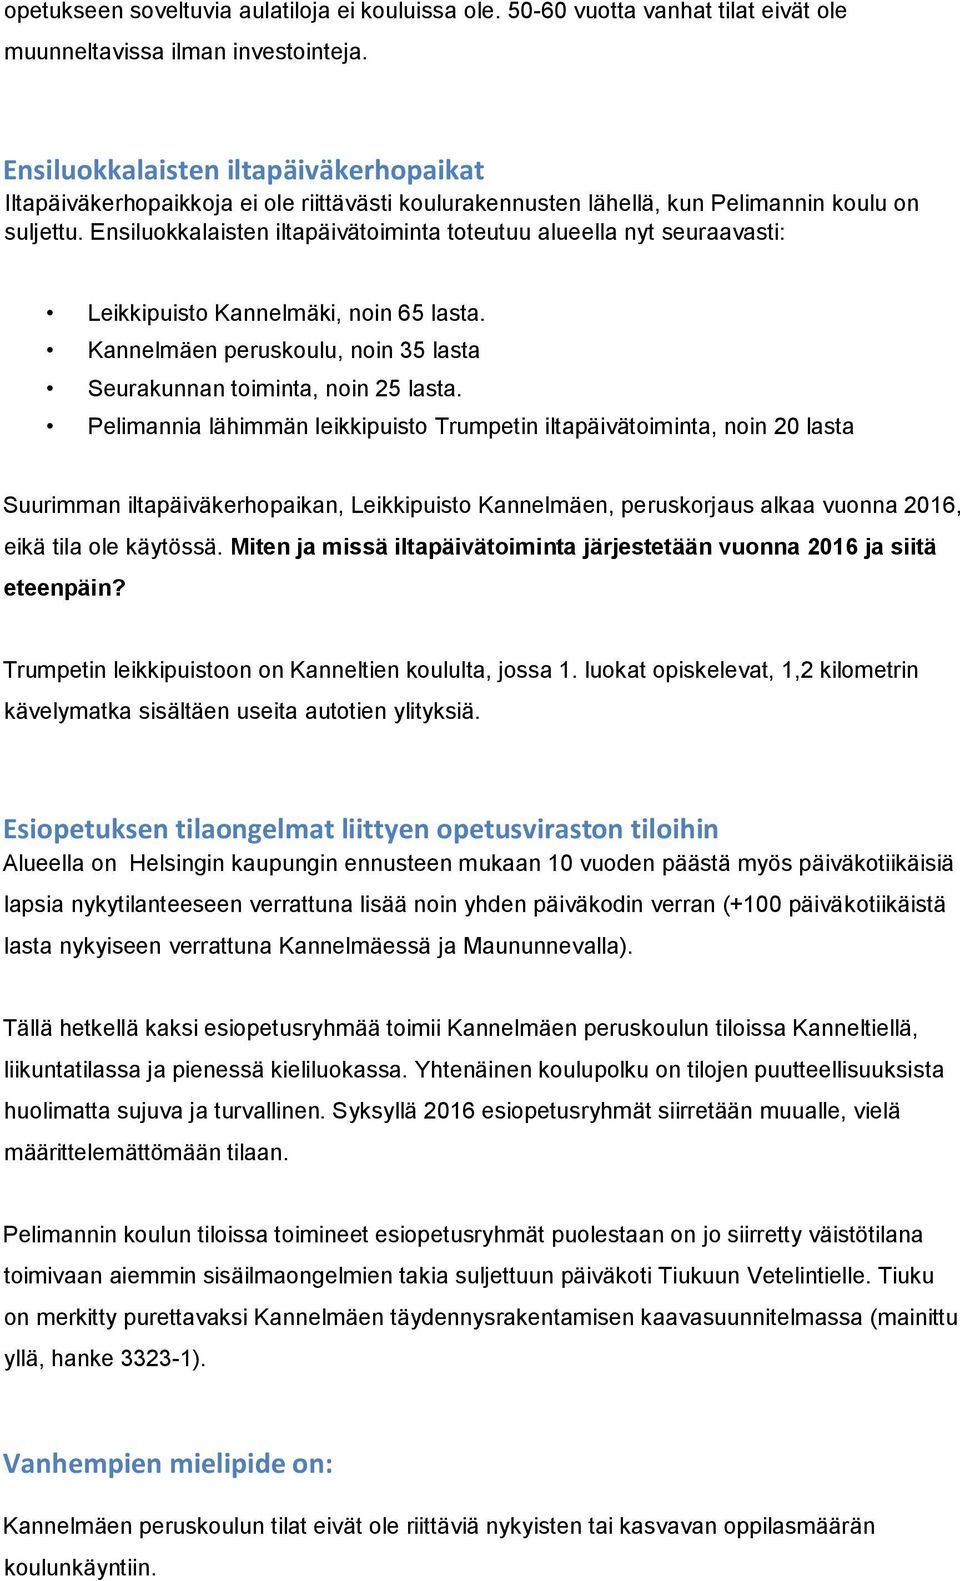 Ensiluokkalaisten iltapäivätoiminta toteutuu alueella nyt seuraavasti: Leikkipuisto Kannelmäki, noin 65 lasta. Kannelmäen peruskoulu, noin 35 lasta Seurakunnan toiminta, noin 25 lasta.